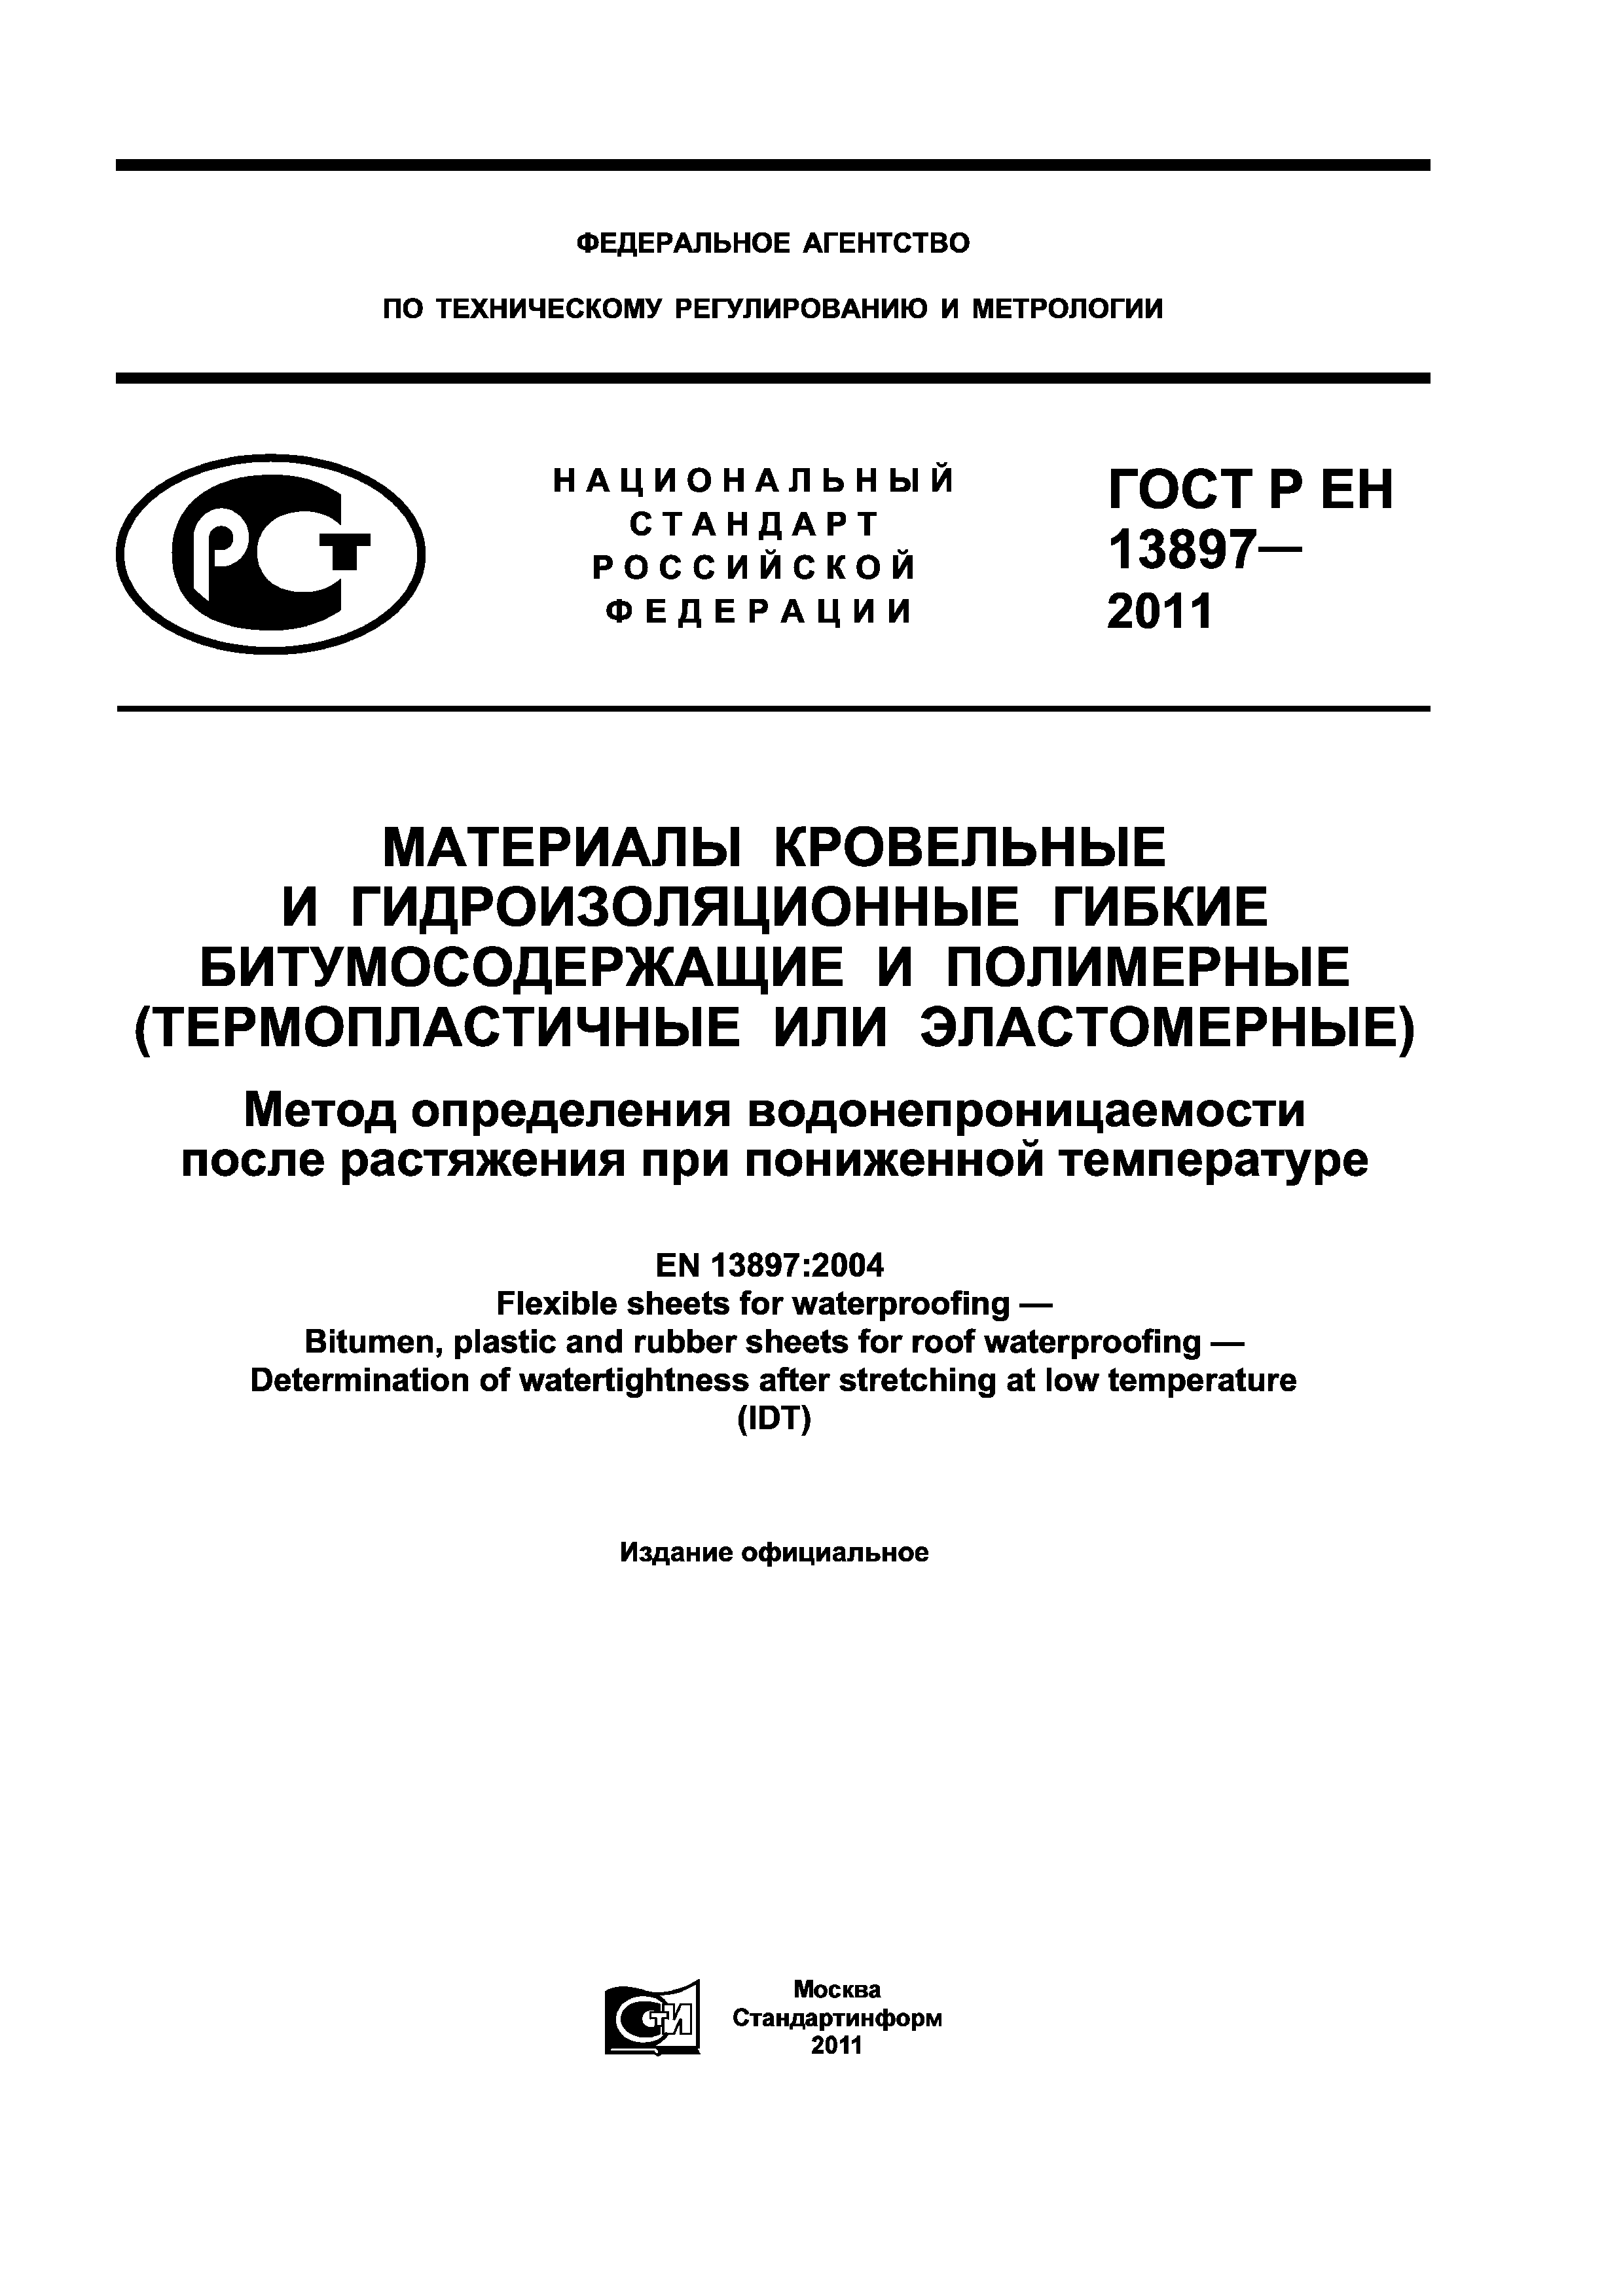 ГОСТ Р ЕН 13897-2011